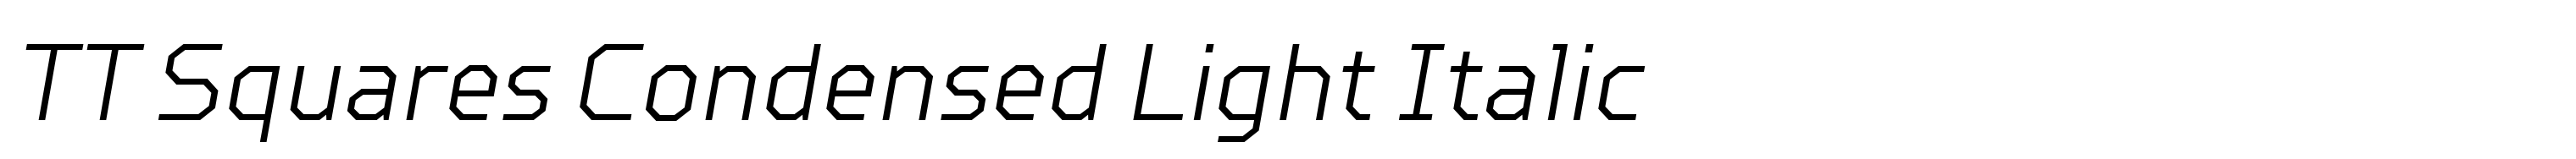 TT Squares Condensed Light Italic